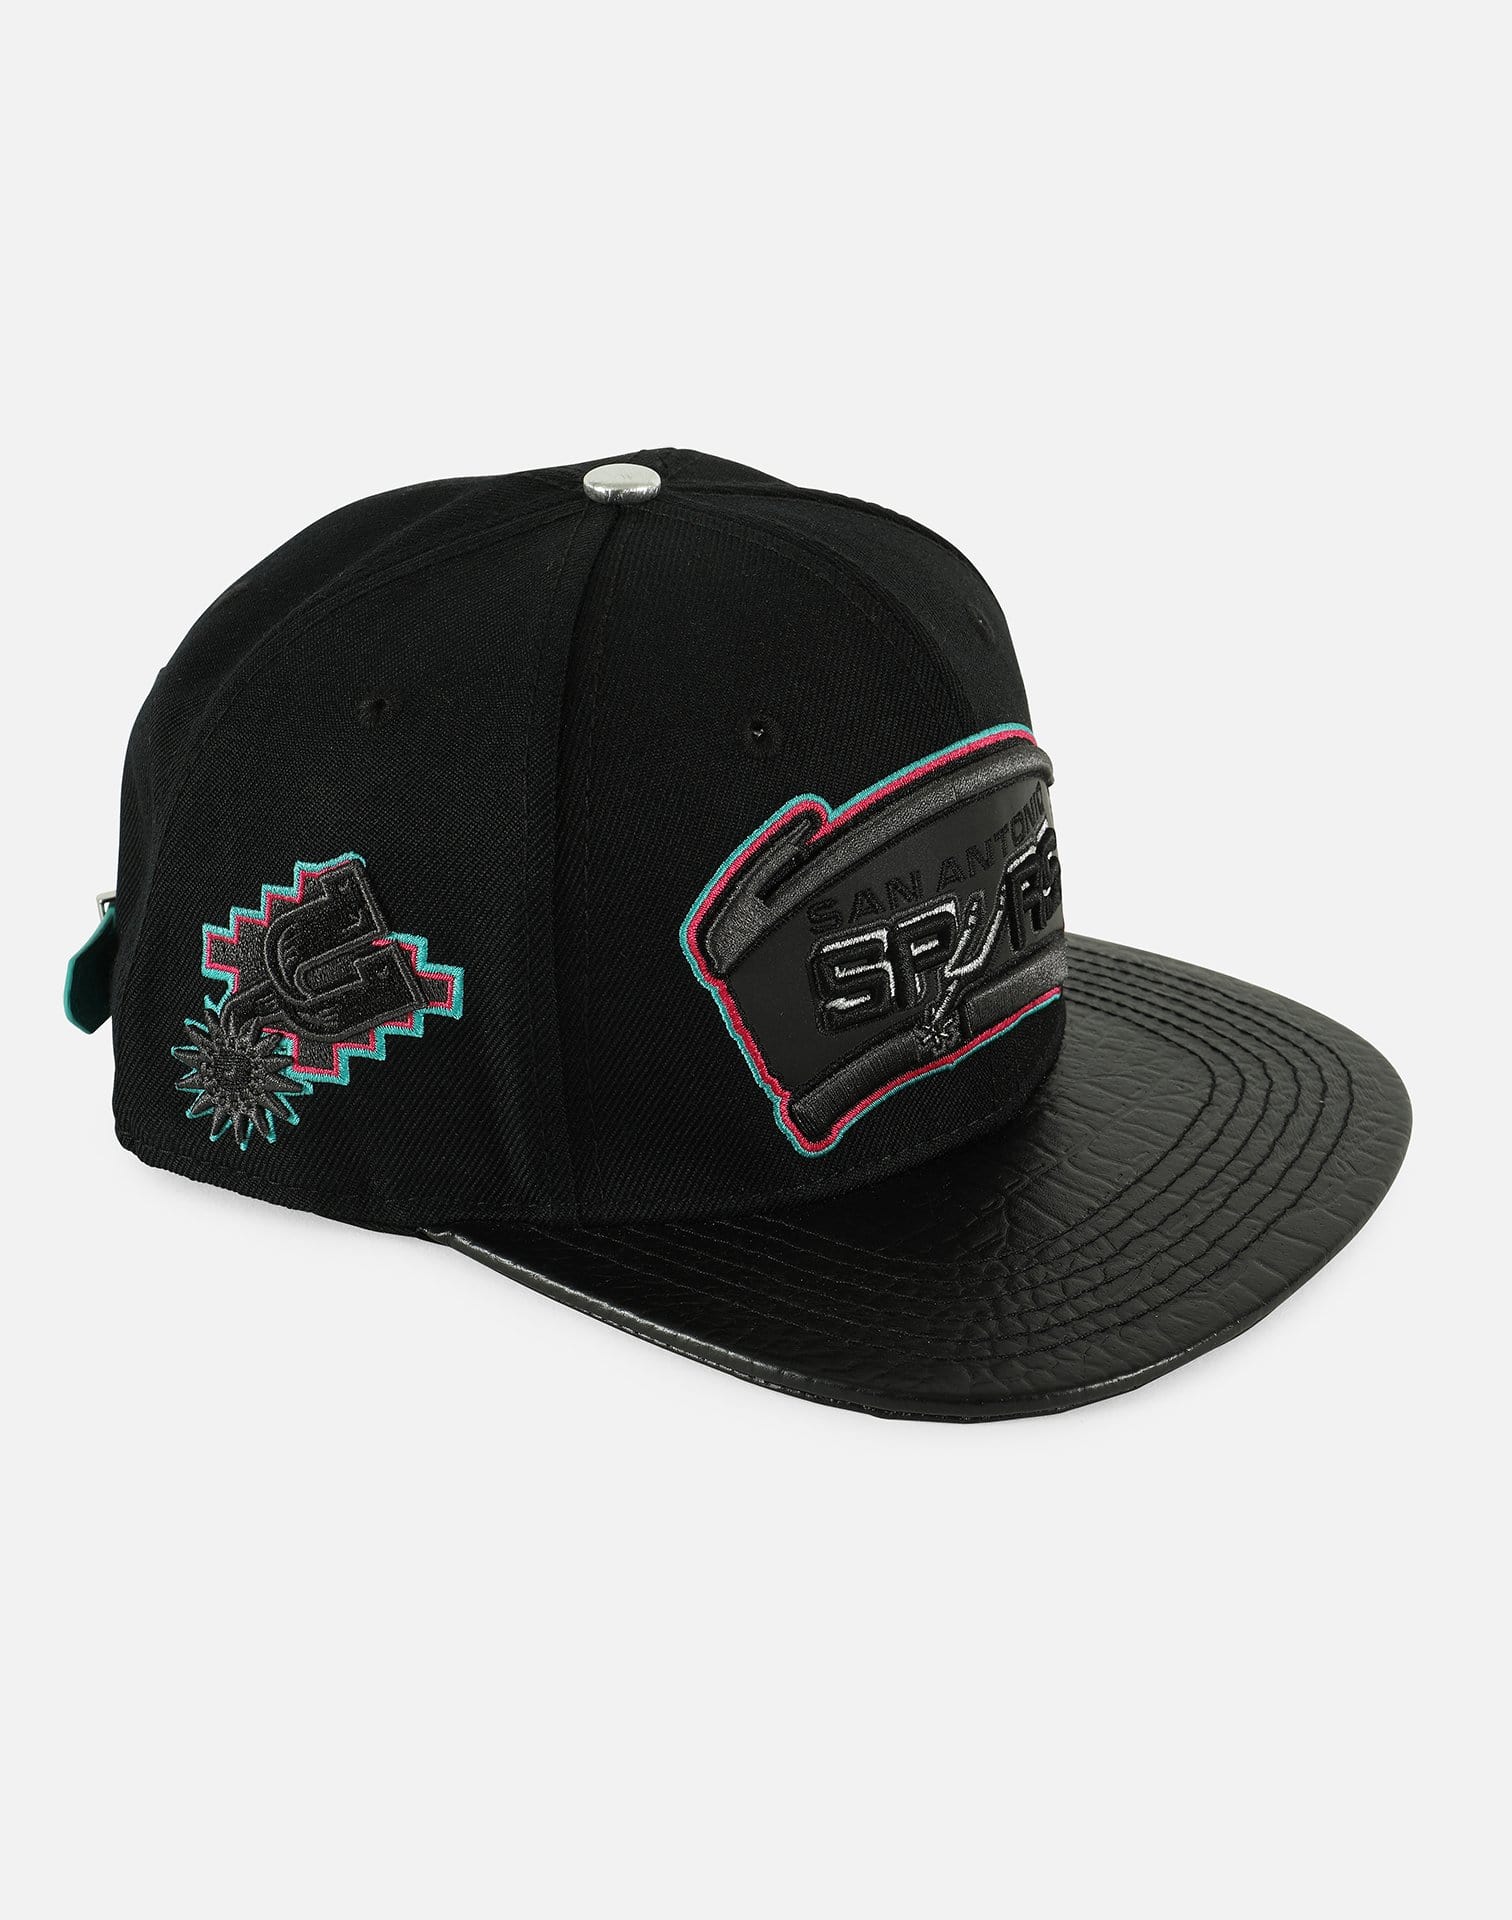 Global Elite NBA San Antonio Spurs Team Logo Retro Strapback Hat